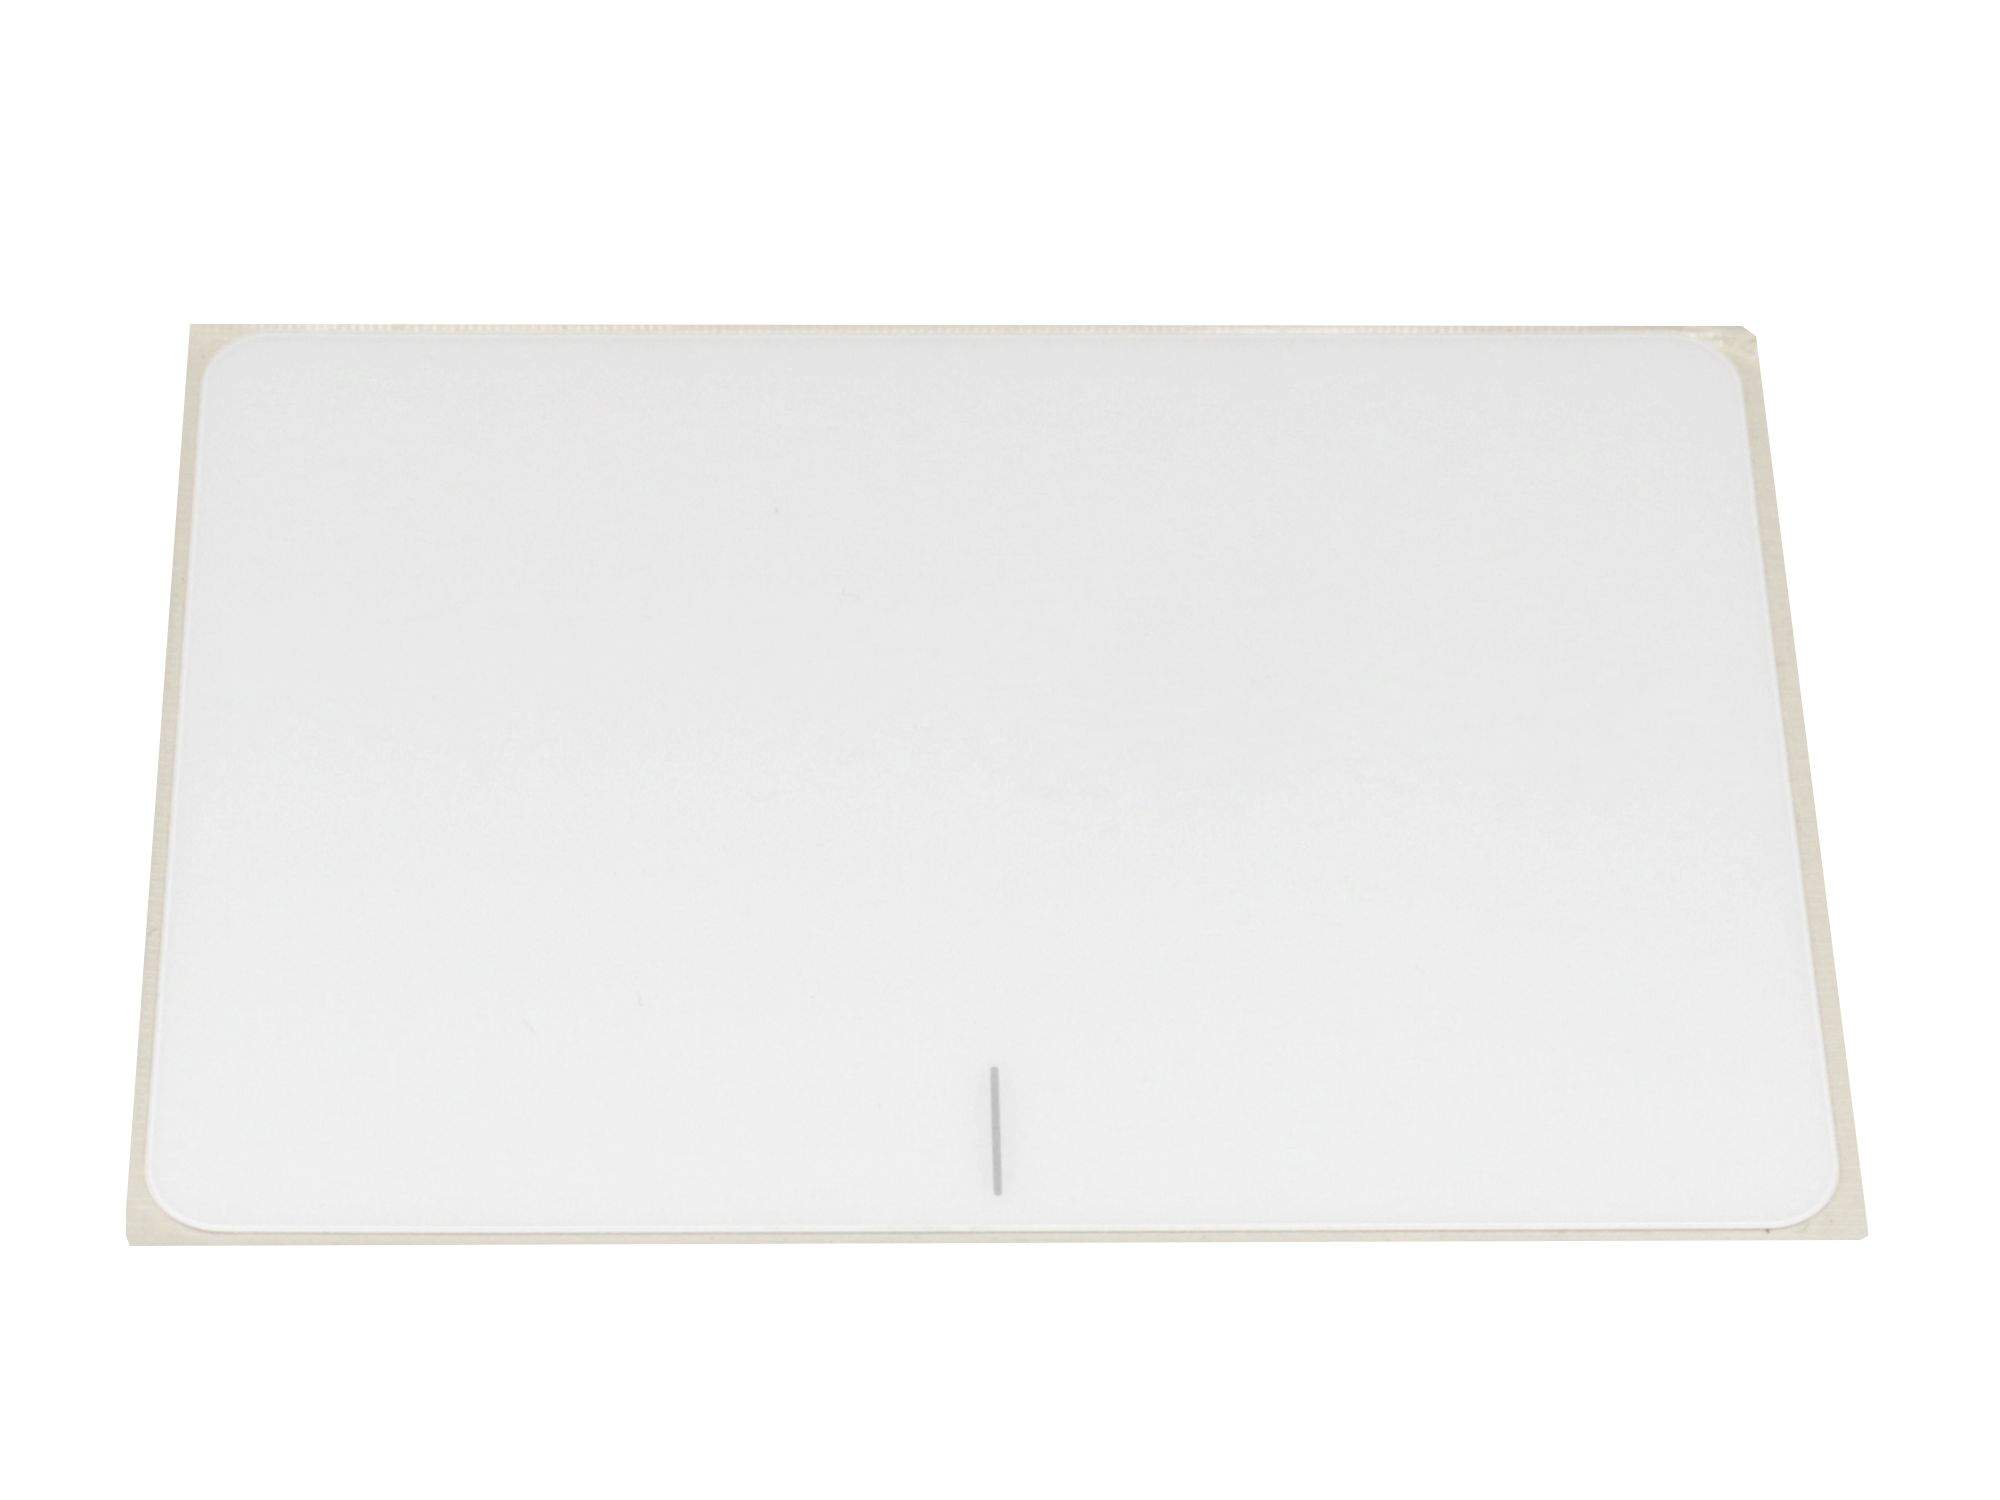 ASUS Touchpad Abdeckung weiß Original für Asus VivoBook F556UR Serie